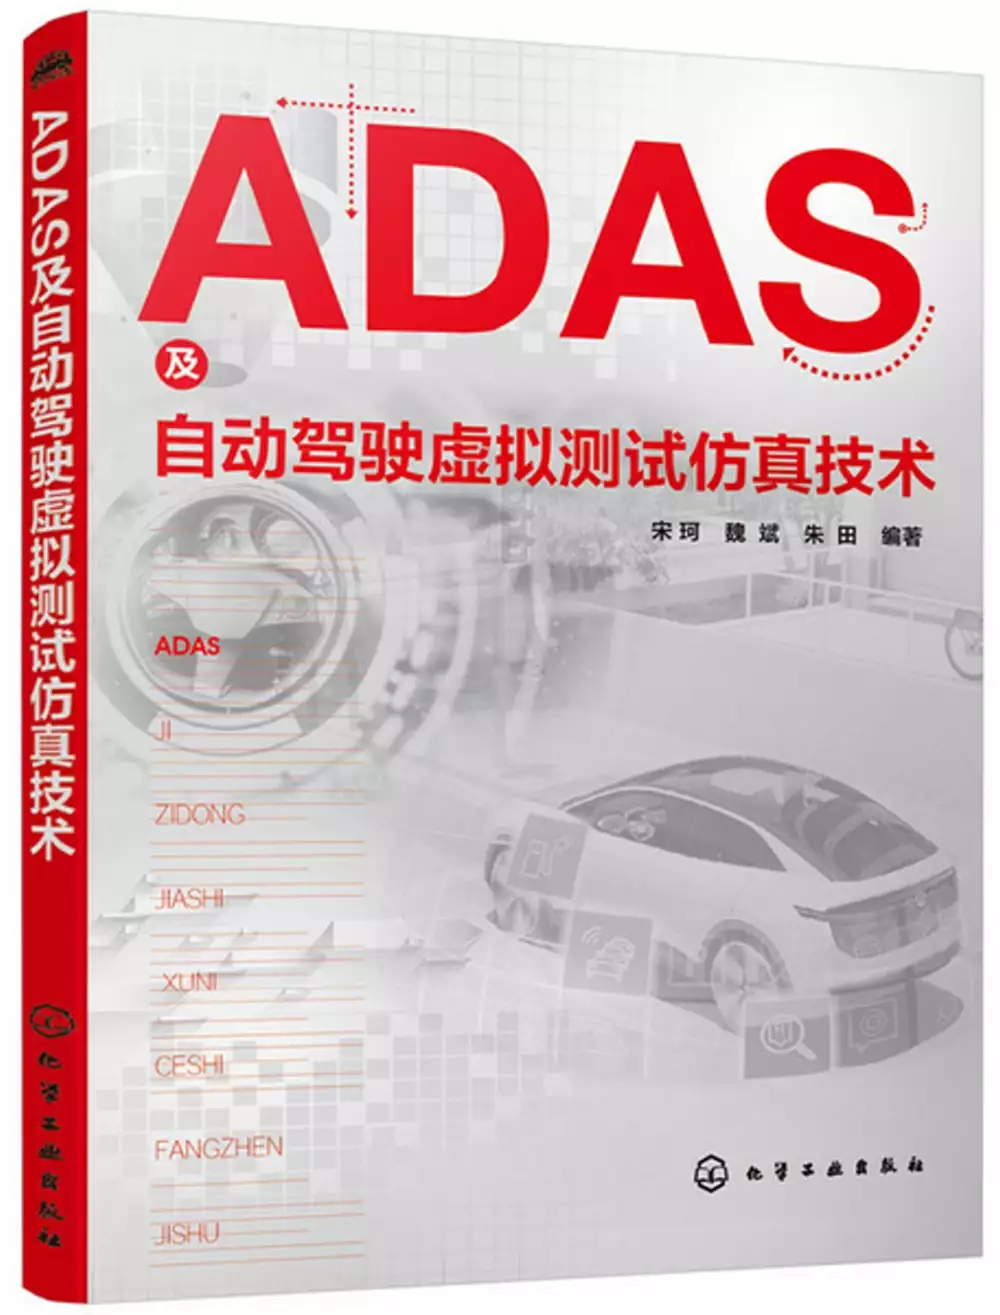 豐田 電動機 車的問題，包括PTT、Dcard、Mobile01找圖書和論文來找解法和答案更準確安心 